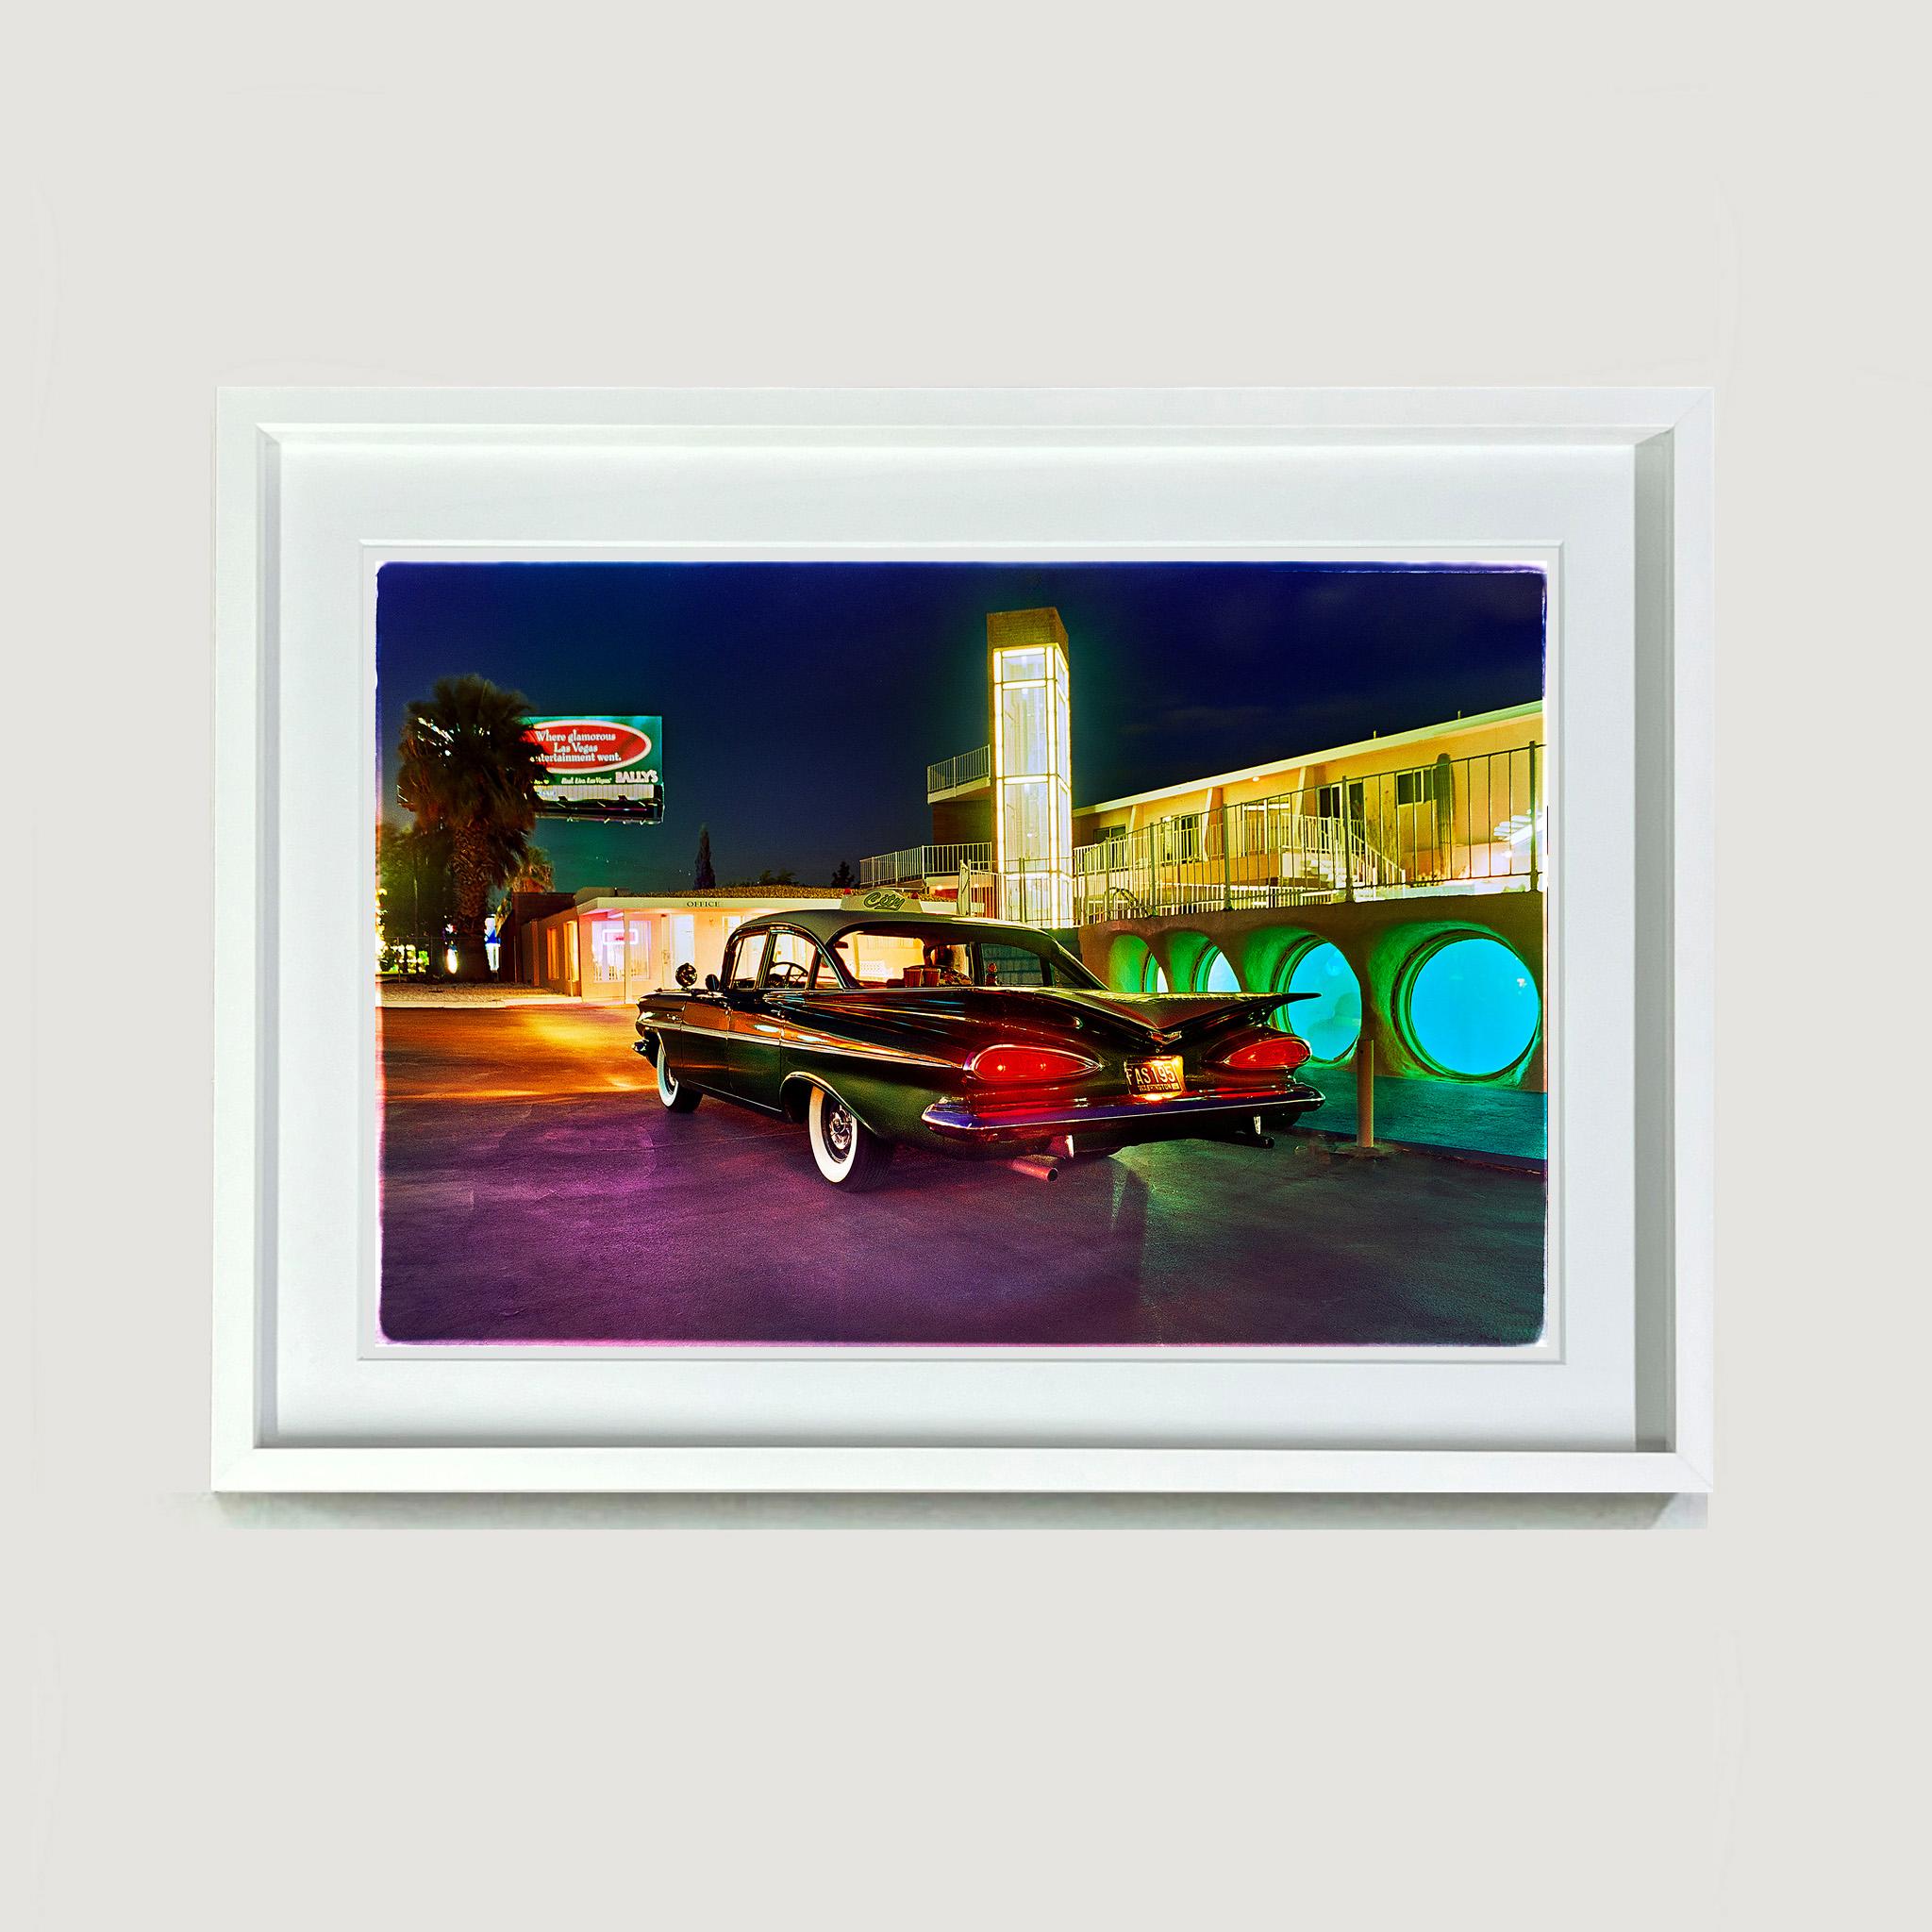 Patrick's Bel Air, Las Vegas – amerikanische Vintage-Auto-Farbfotografie im Vintage-Stil (Zeitgenössisch), Photograph, von Richard Heeps